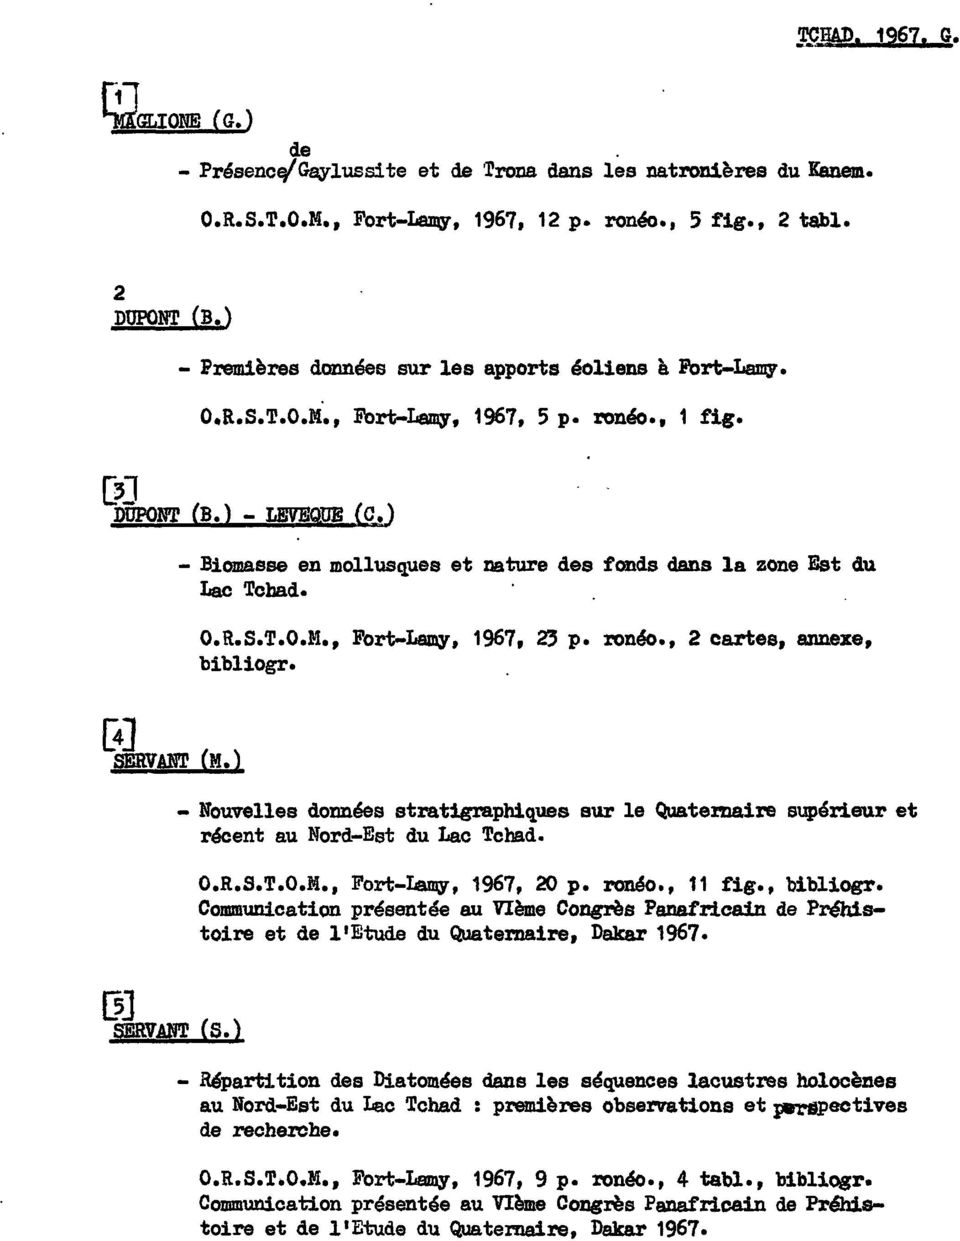 ) - Biomasse en mollusques et nature des fonds dans la zone Est du Lac Tchad. O.R.S.T.O.M., Fort-Lamy, 1967, 2'3 p. ronéo., 2 cartes, annexe, bibliogr. - Nouvelles données strat1gra.